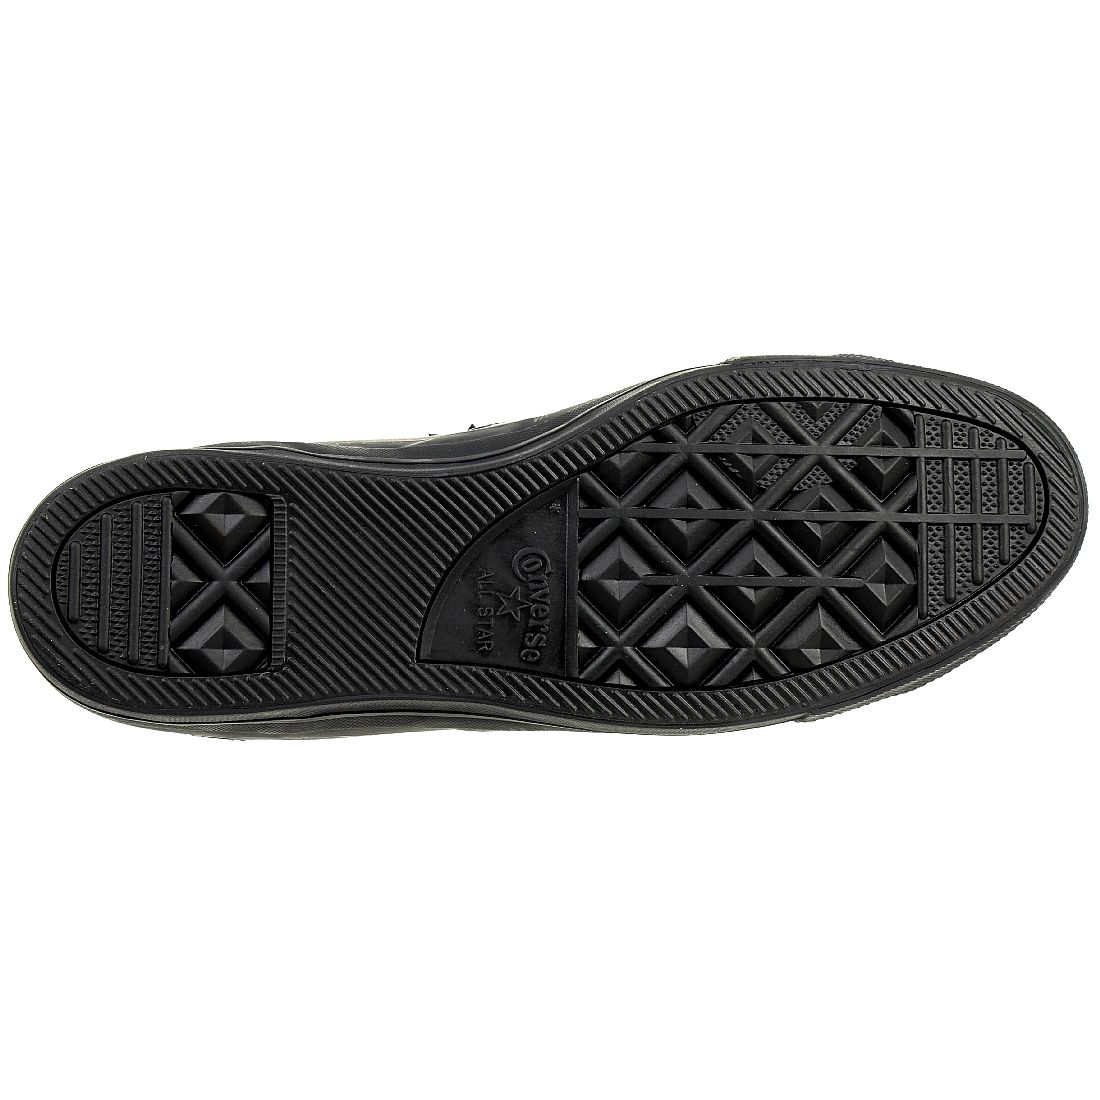 Converse STAR PLAYER OX Schuhe Sneaker Leder schwarz 159779C 